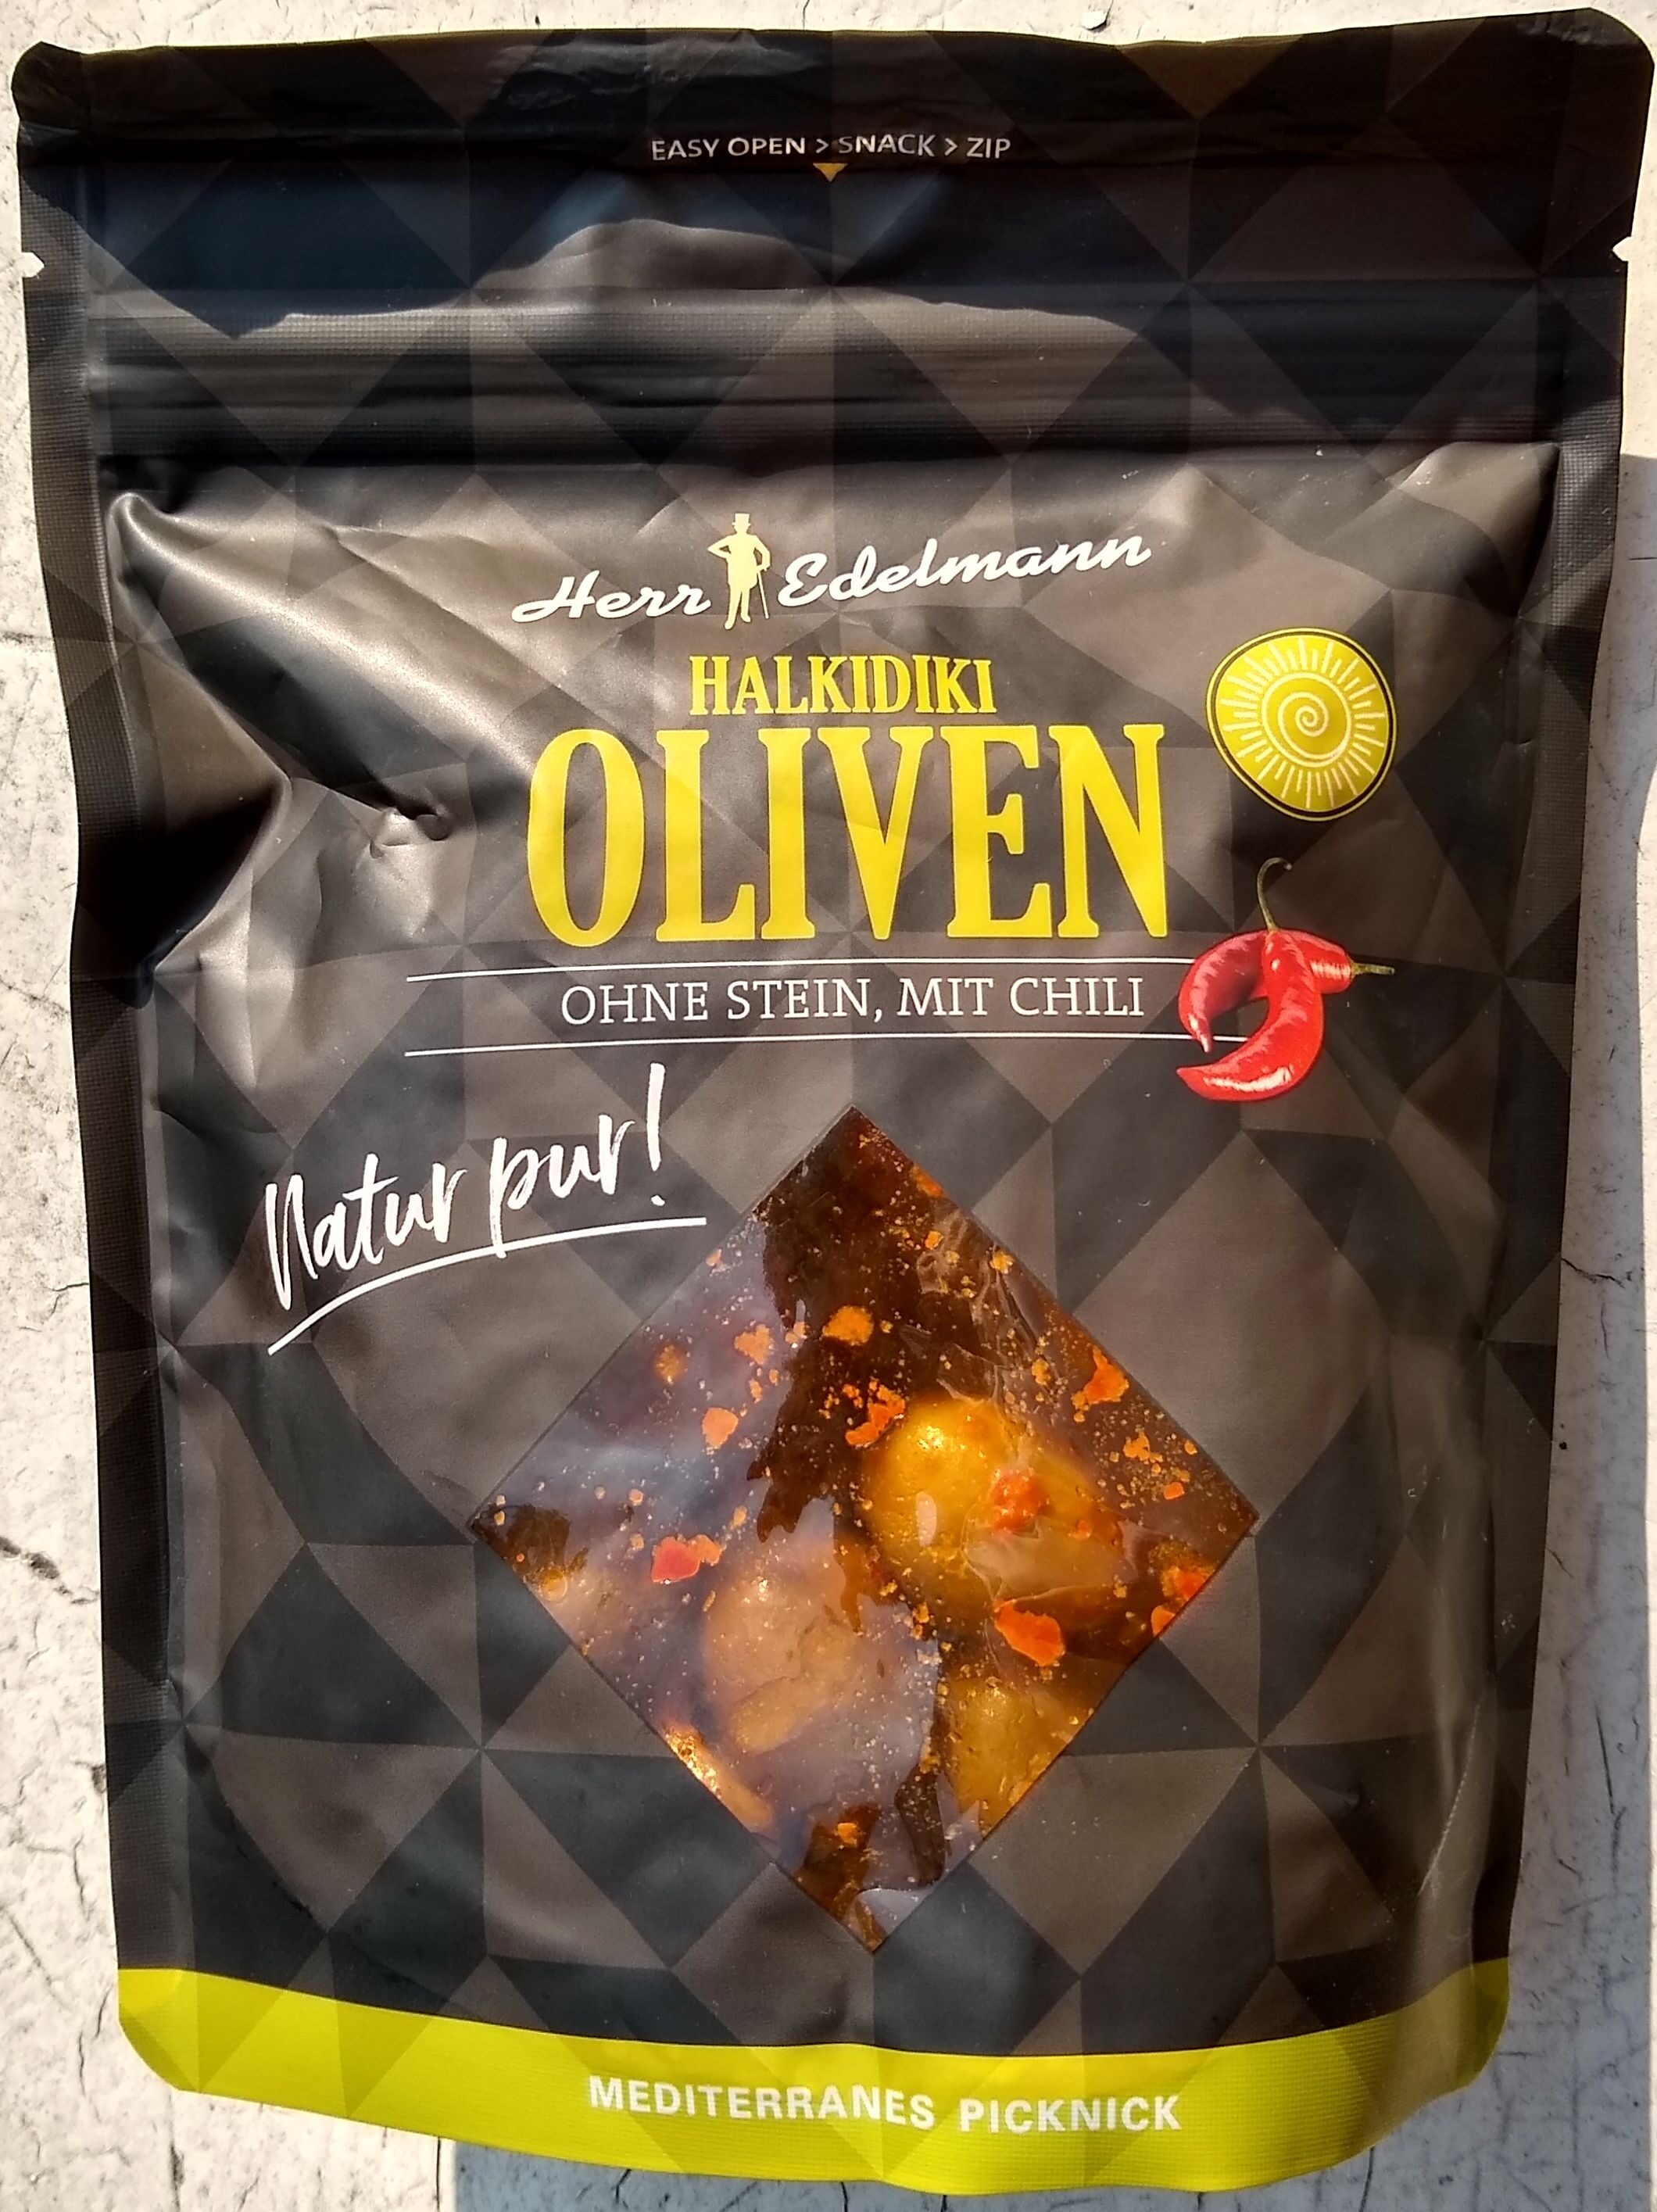 Halkidiki Oliven - Produkt